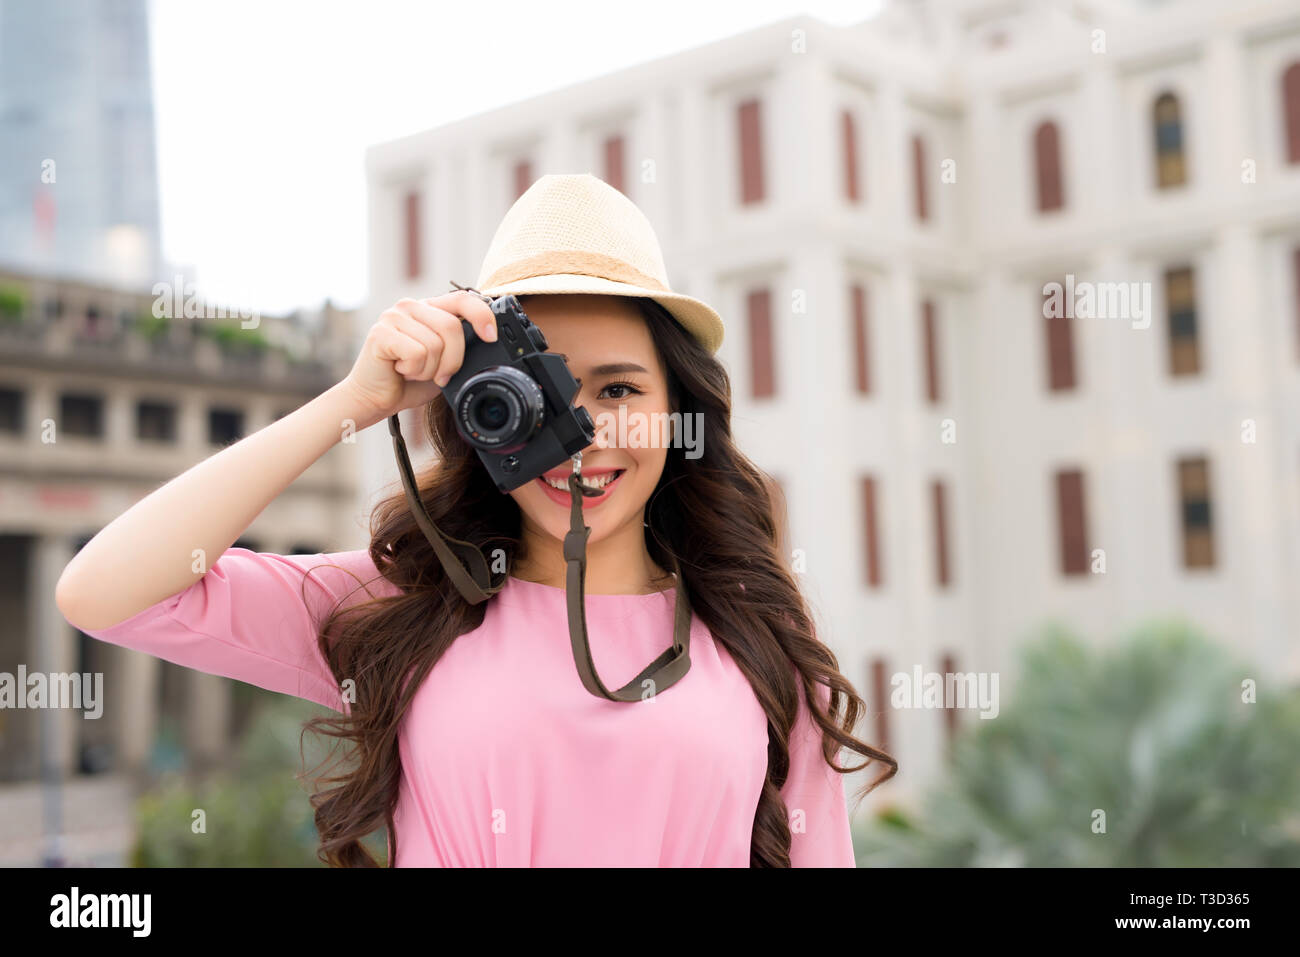 Ritratto di donna asiatica traveler fotografia hipster stile di vita sulla strada con la fotocamera Foto Stock